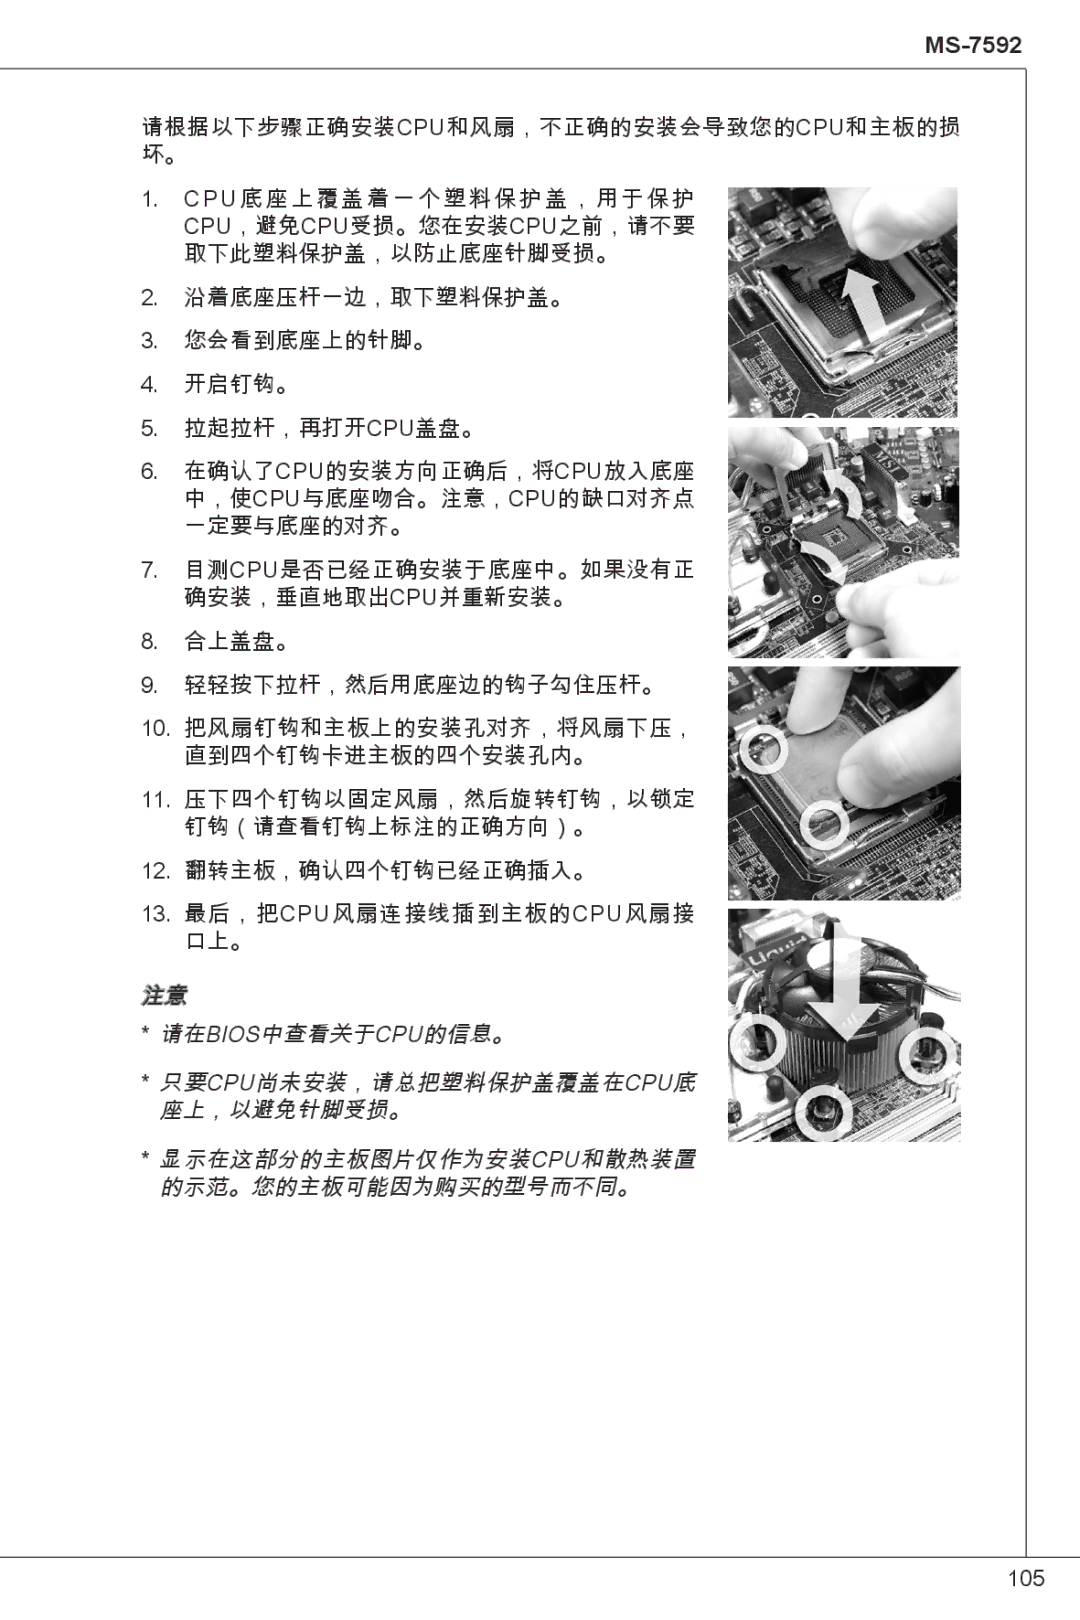 MSI G41M-P23 manual 105 